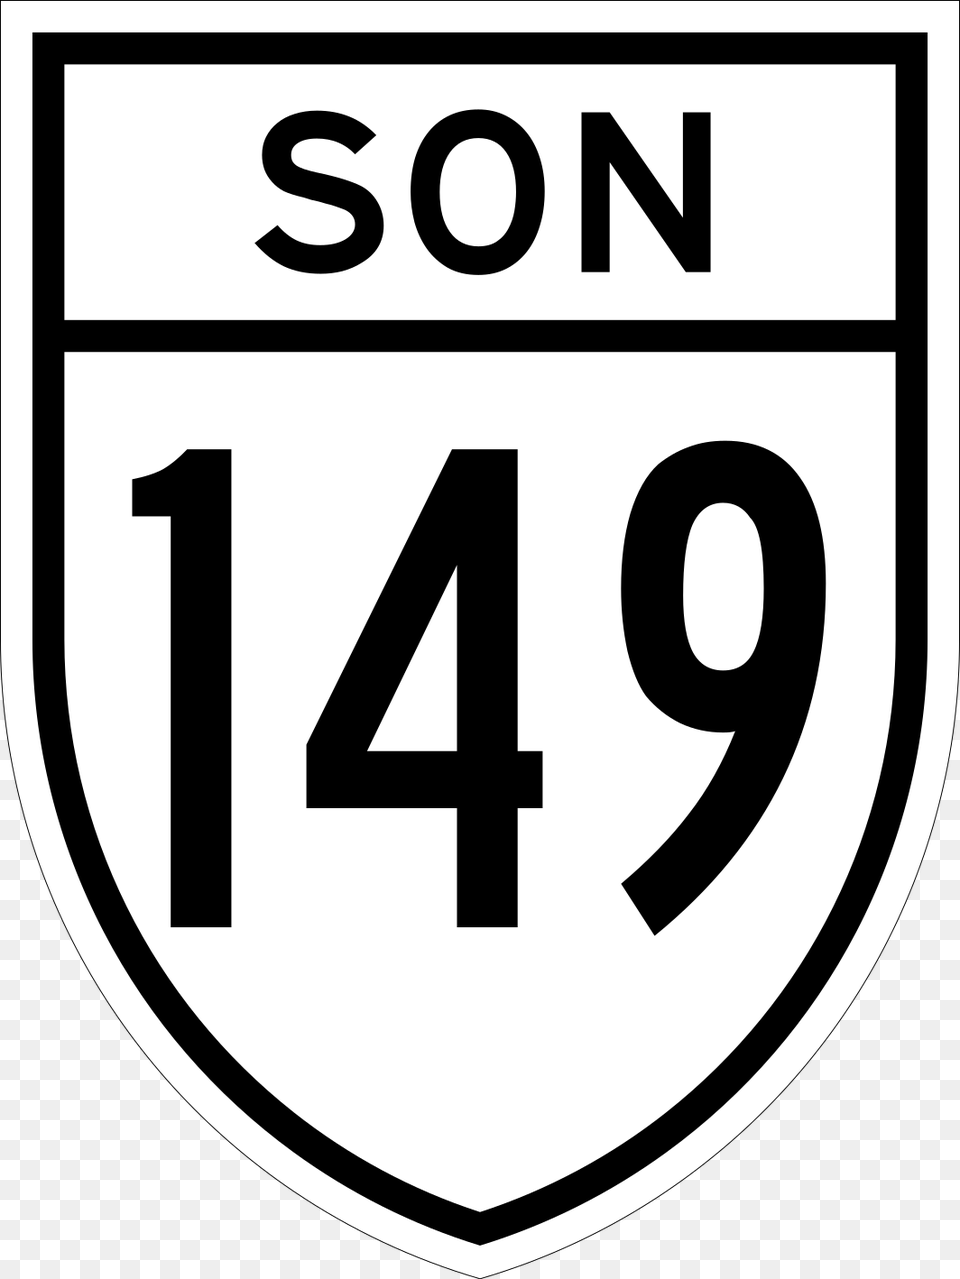 Carretera Estatal 149 Carretera Federal, Symbol, Text, Number Png Image